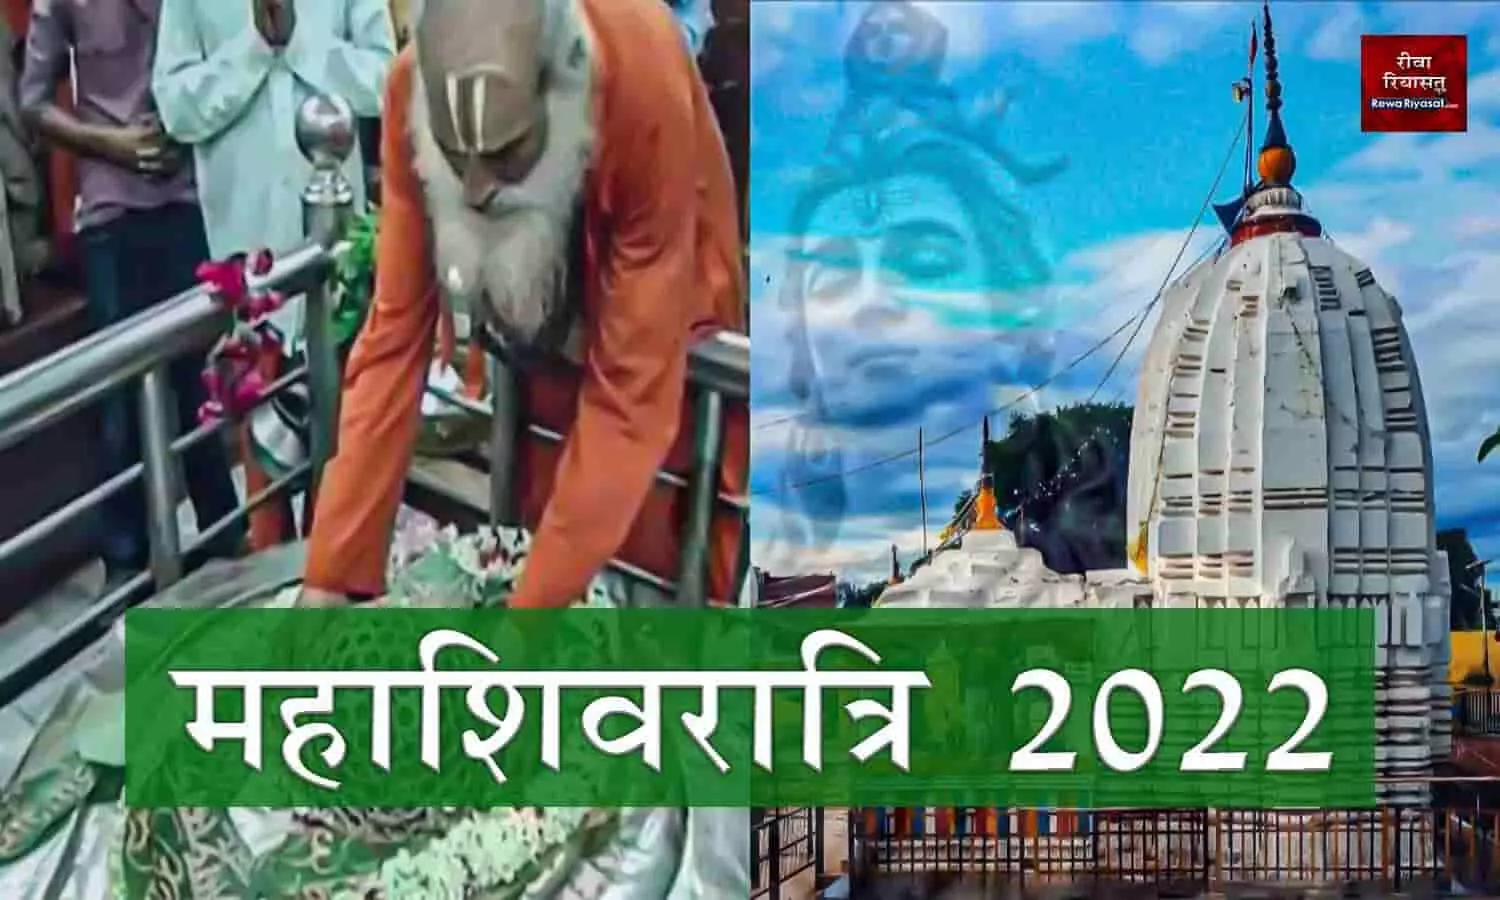 Maha Shivratri 2022: रीवा के देवतालाब और किले के महामृत्युंजय मंदिर में करें पूजा-अर्चना, शिव की कृपा बरसेगी